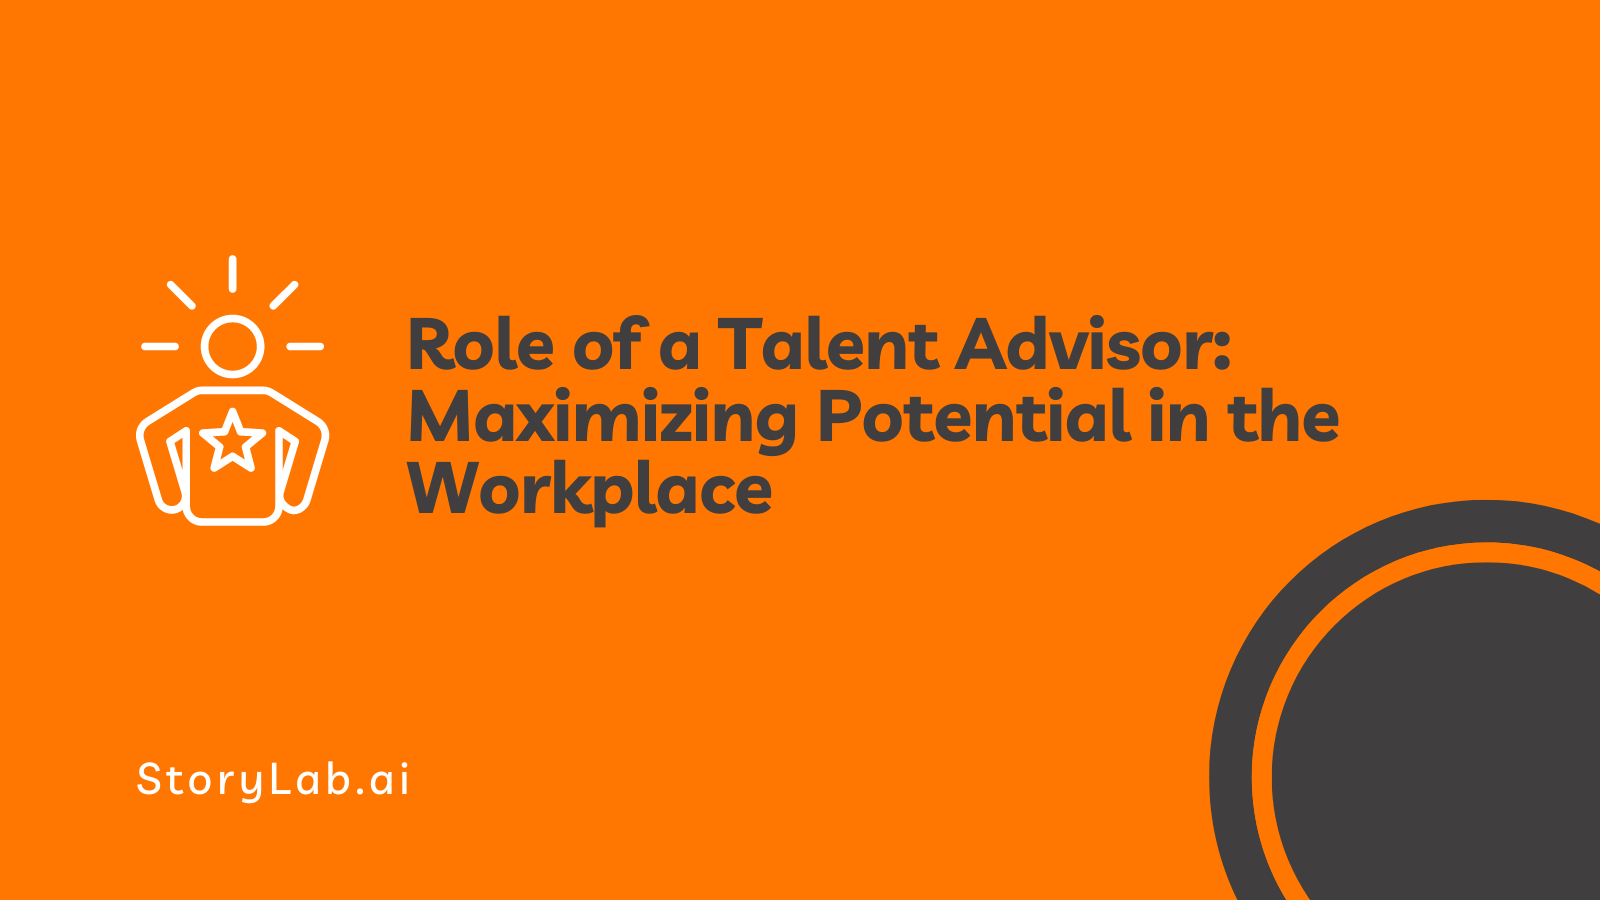 Papel de un asesor de talentos para maximizar el potencial en el lugar de trabajo